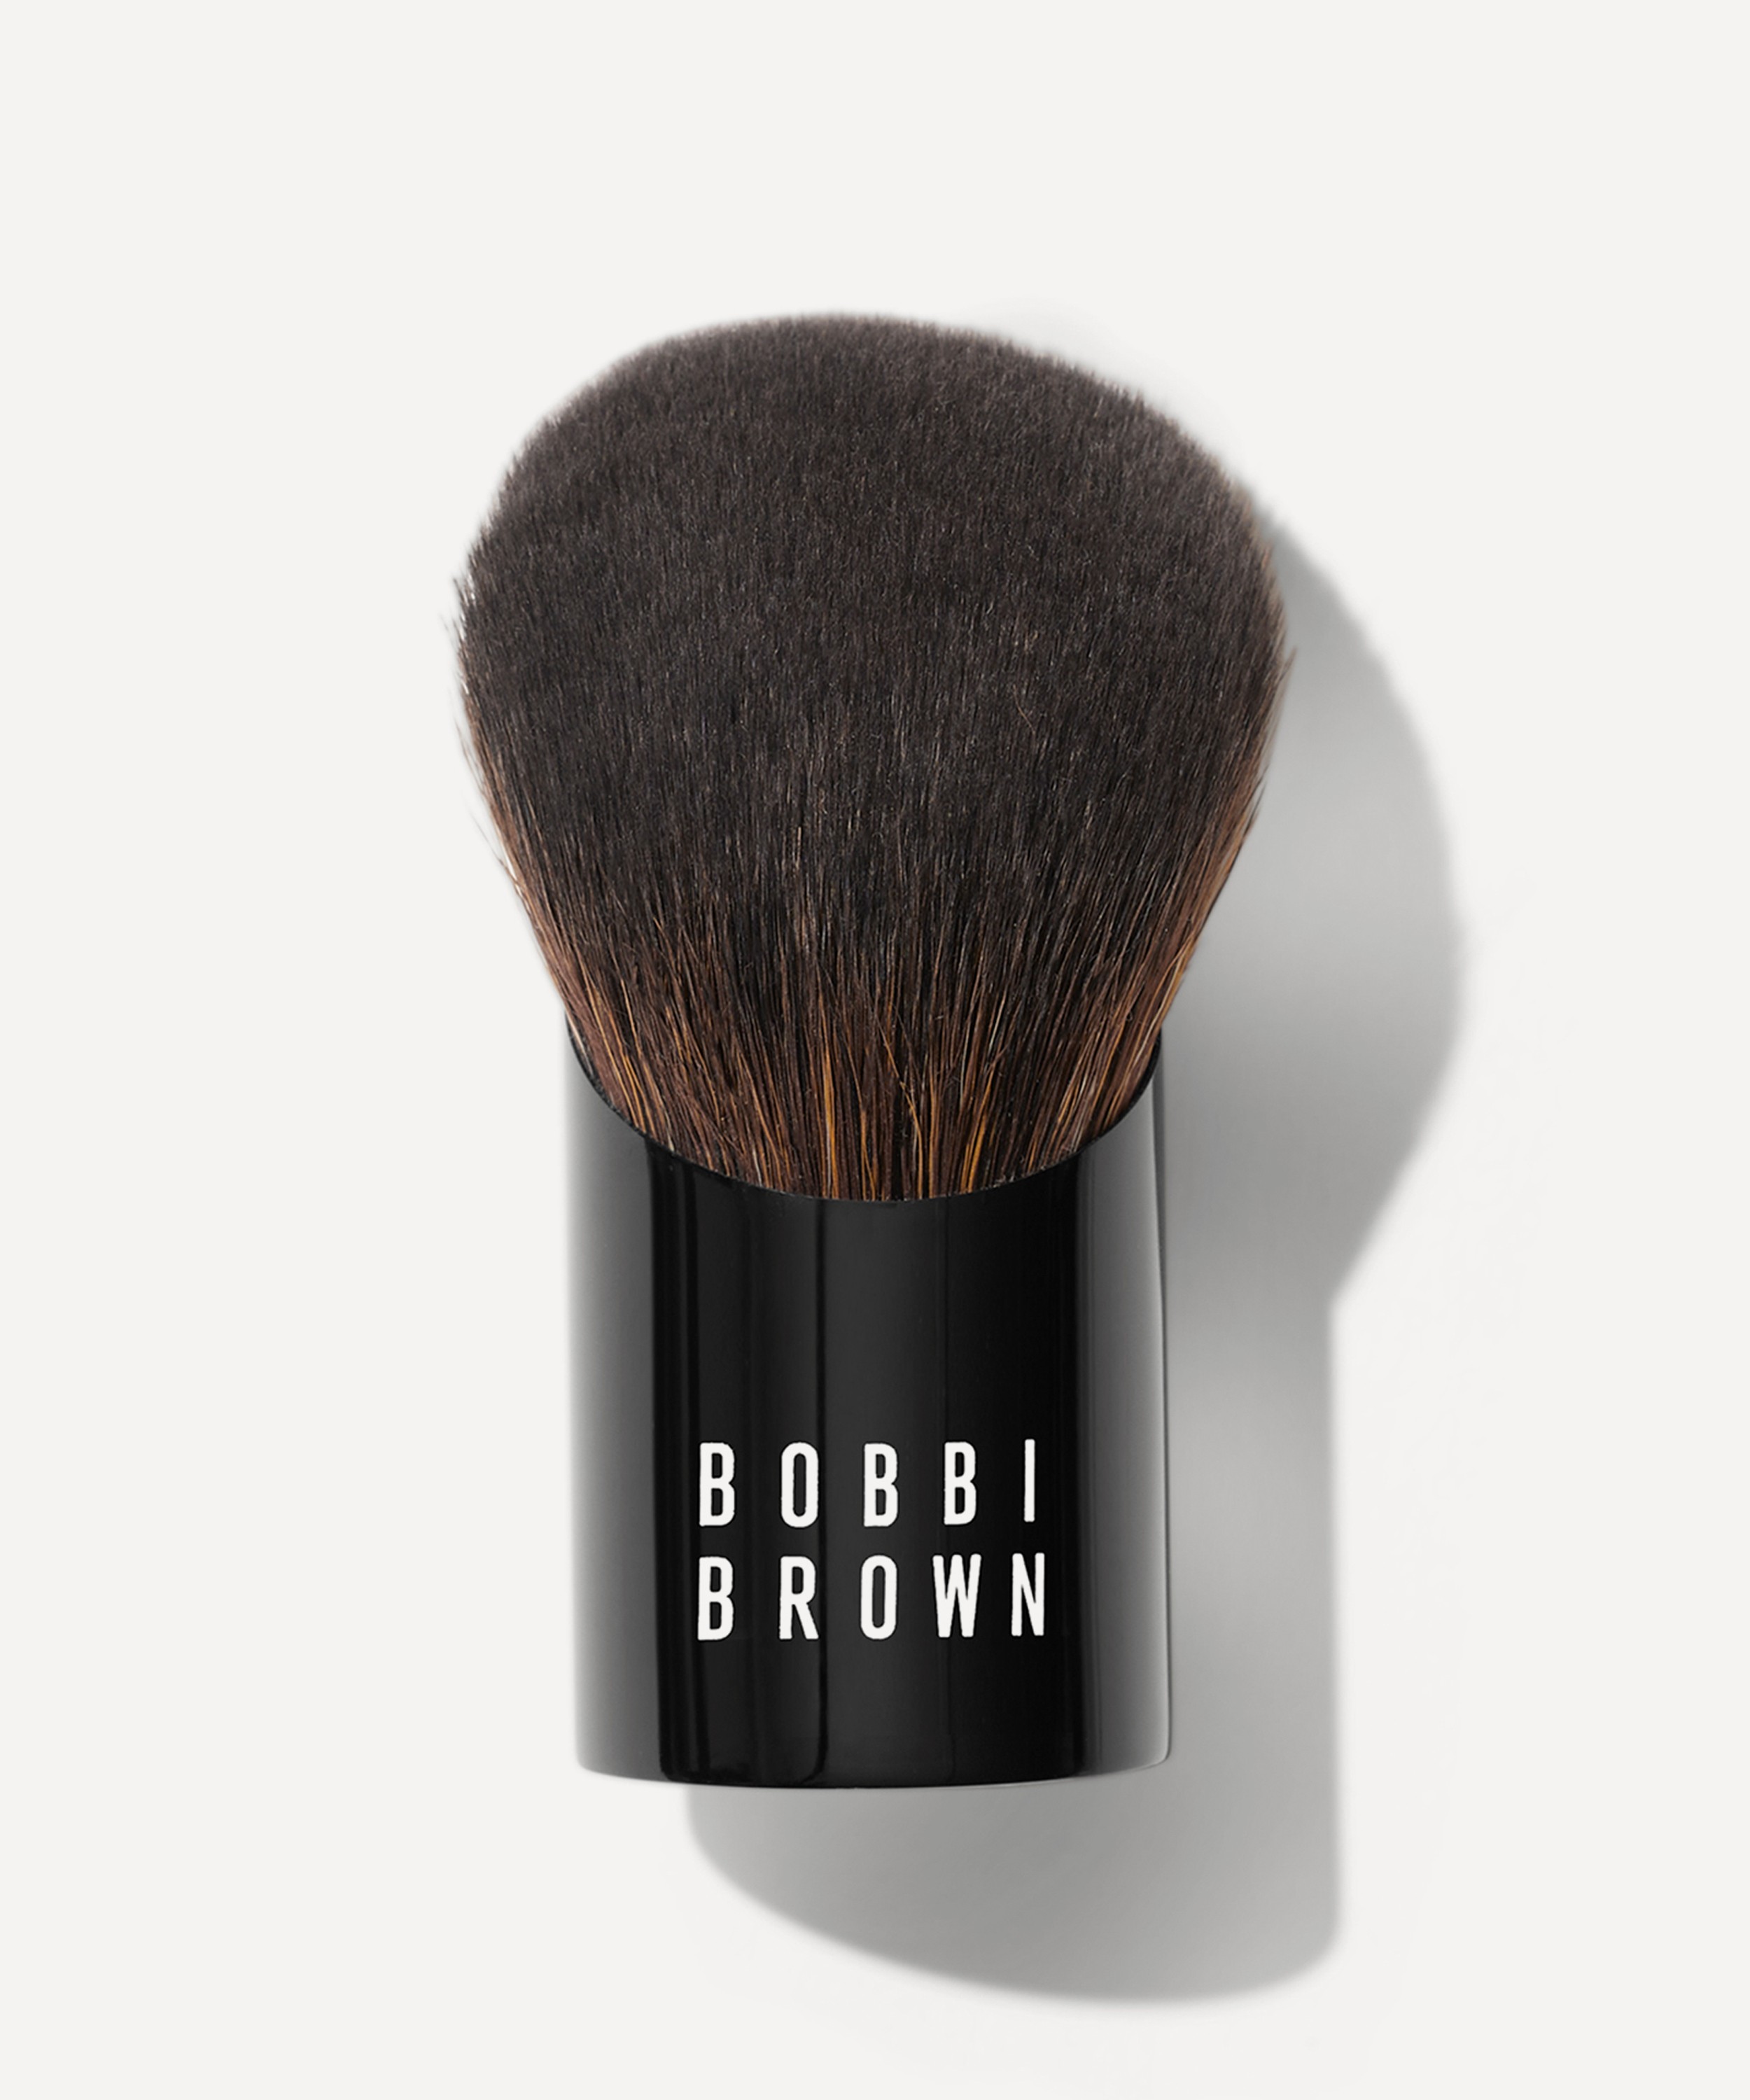 Bobbi Brown - Smooth Blending Brush